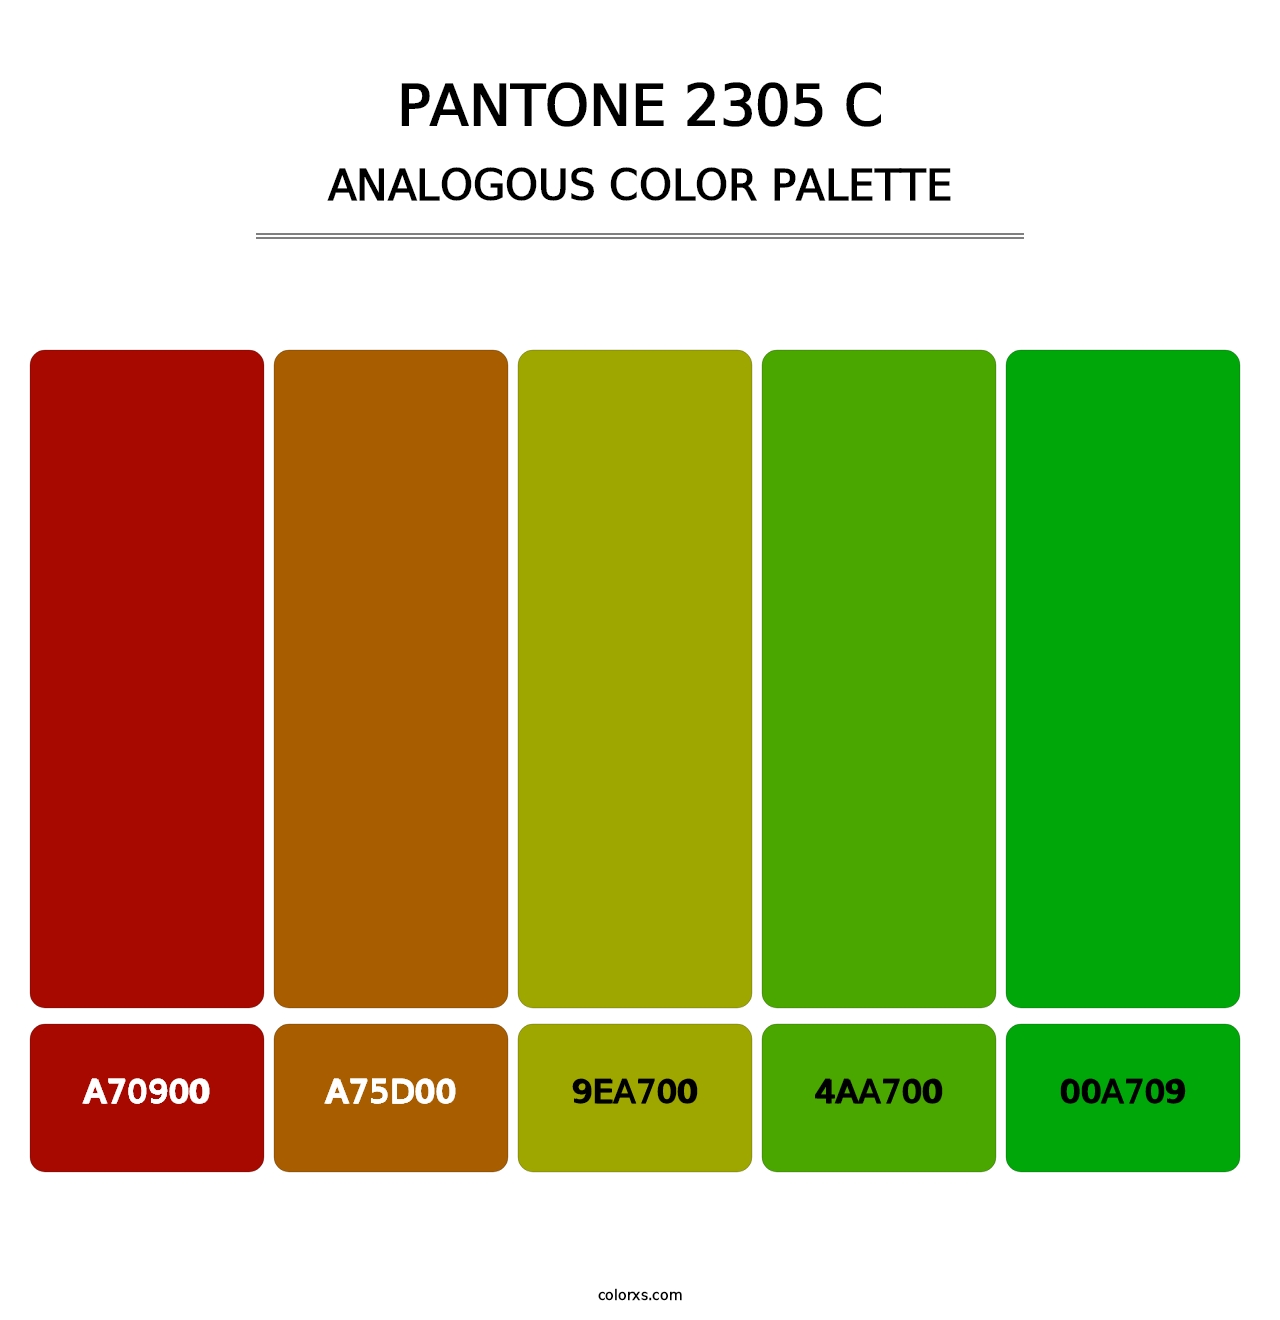 PANTONE 2305 C - Analogous Color Palette